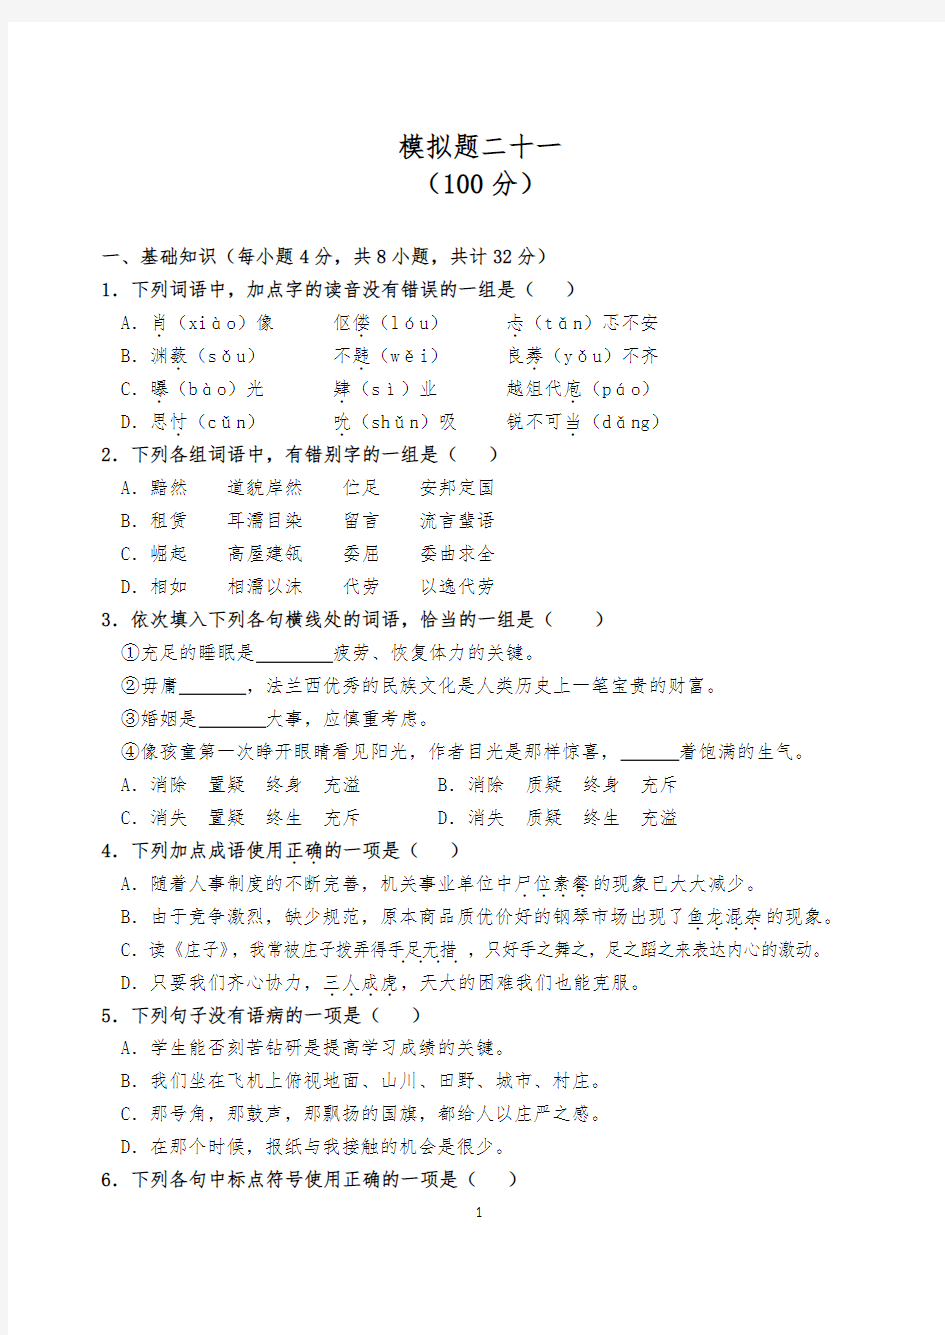 (完整版)2018年重庆对口高职升学考试语文模拟题二十一